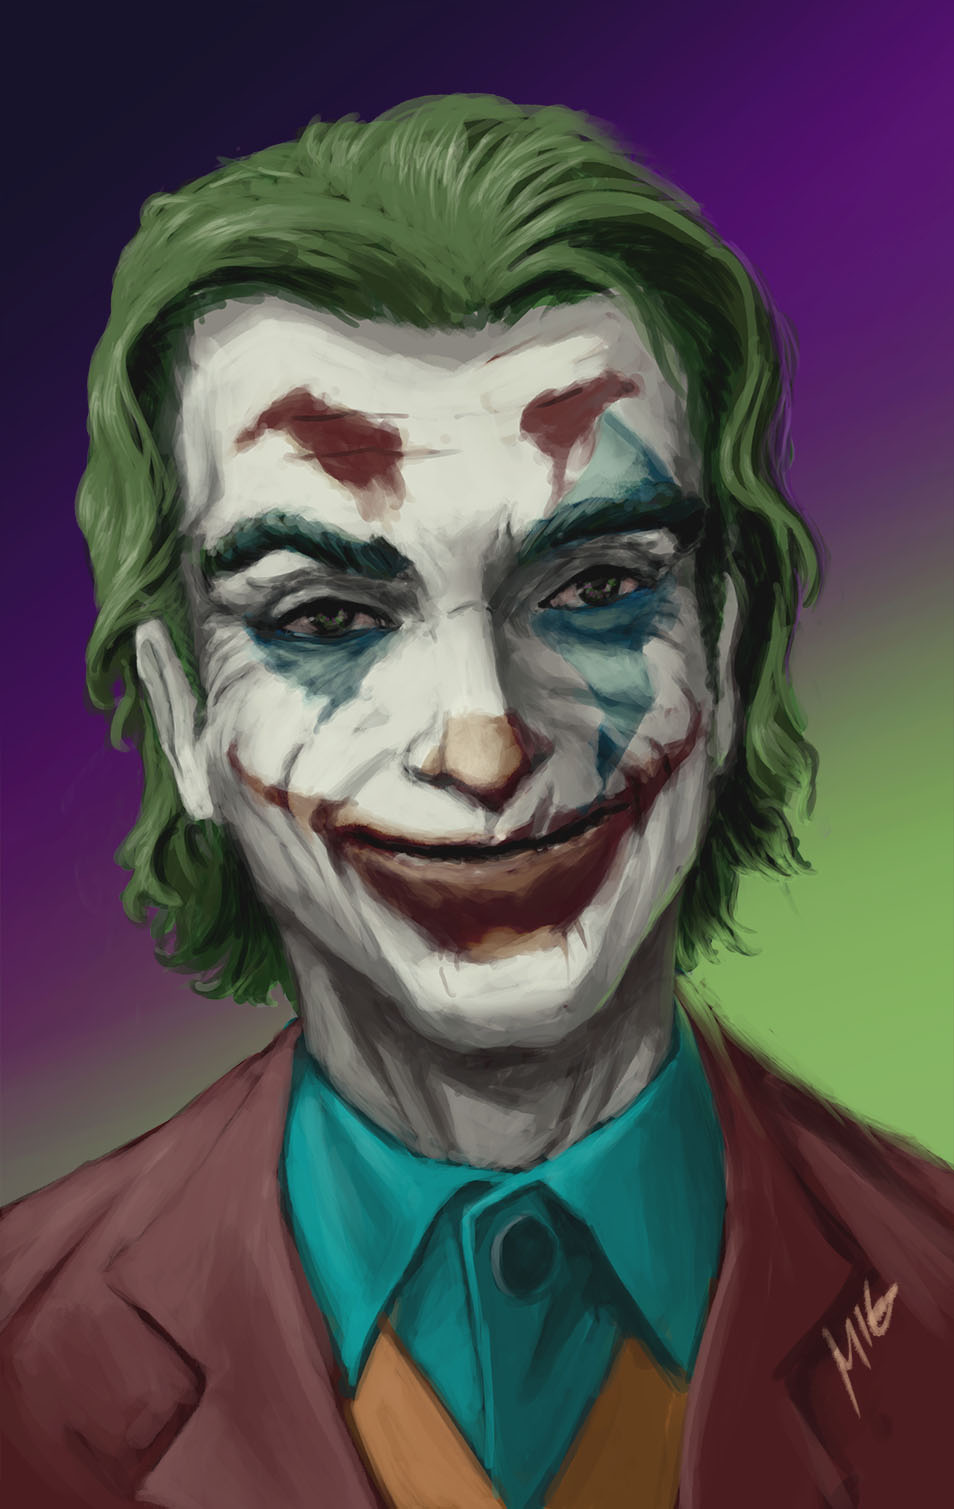 the joker by themimig on DeviantArt